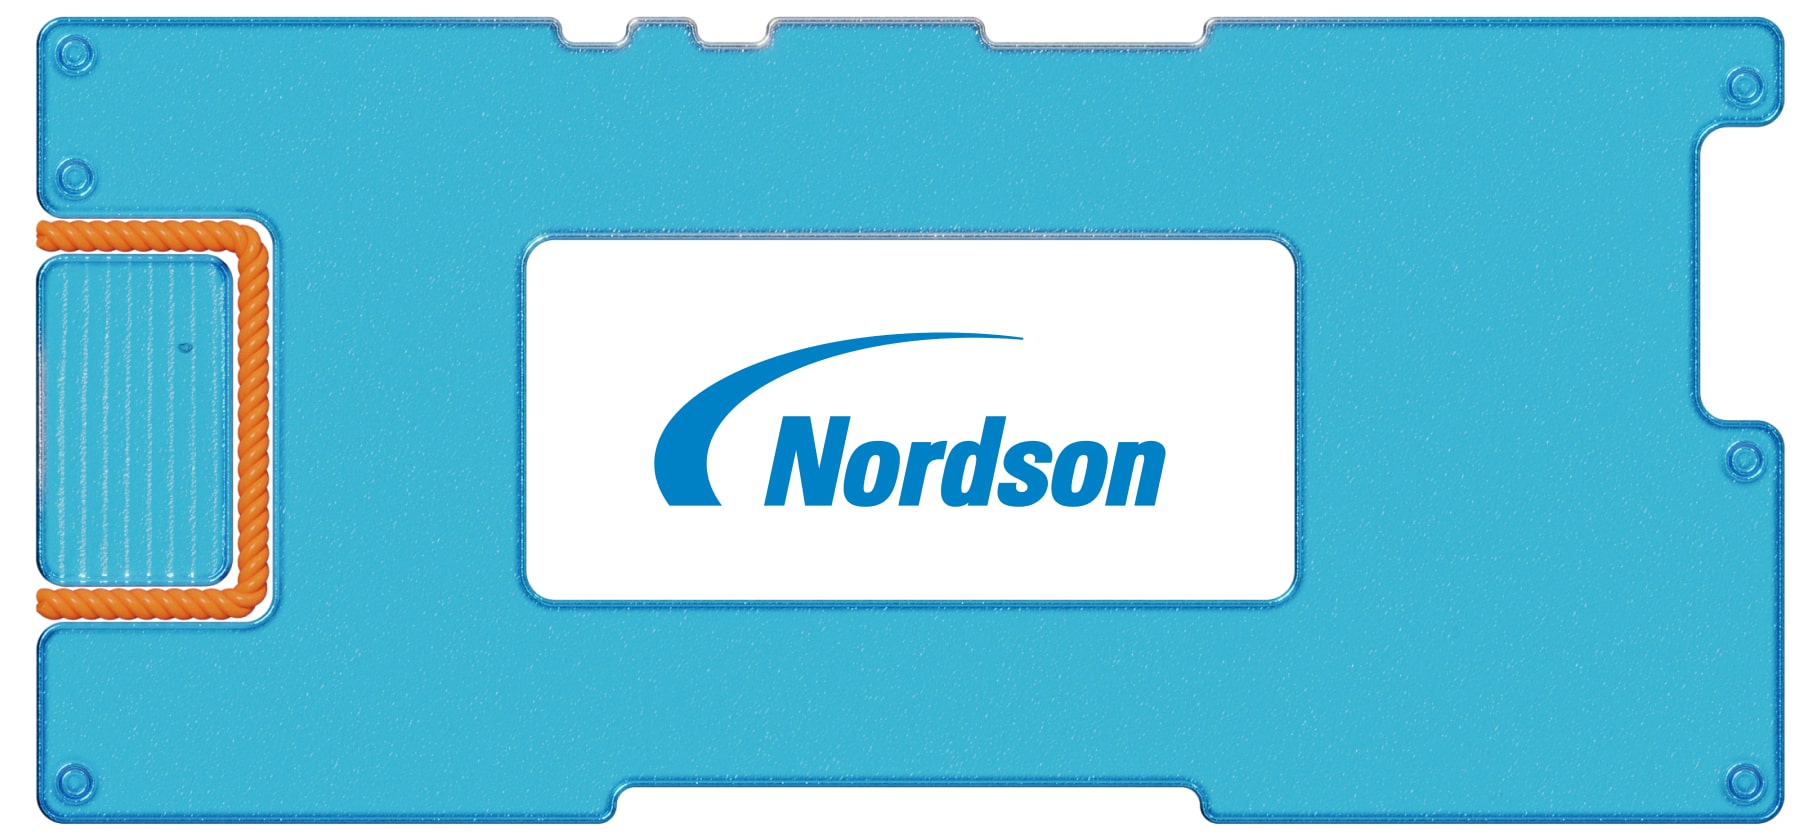 Инвестидея: Nordson, потому что покрытия